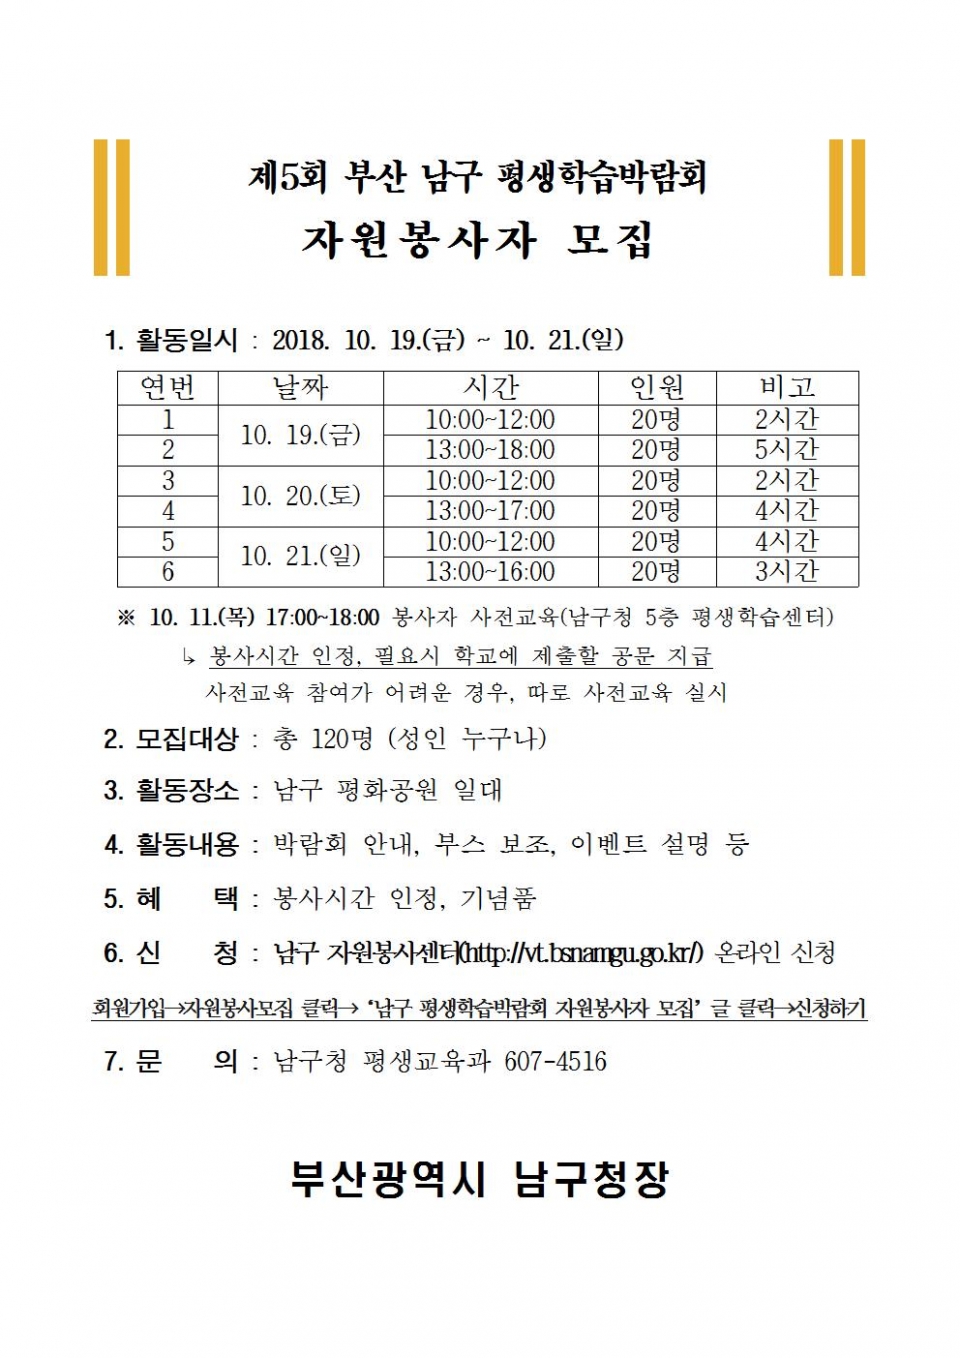 제5회 부산 남구 평생학습박람회 자원봉사자 모집